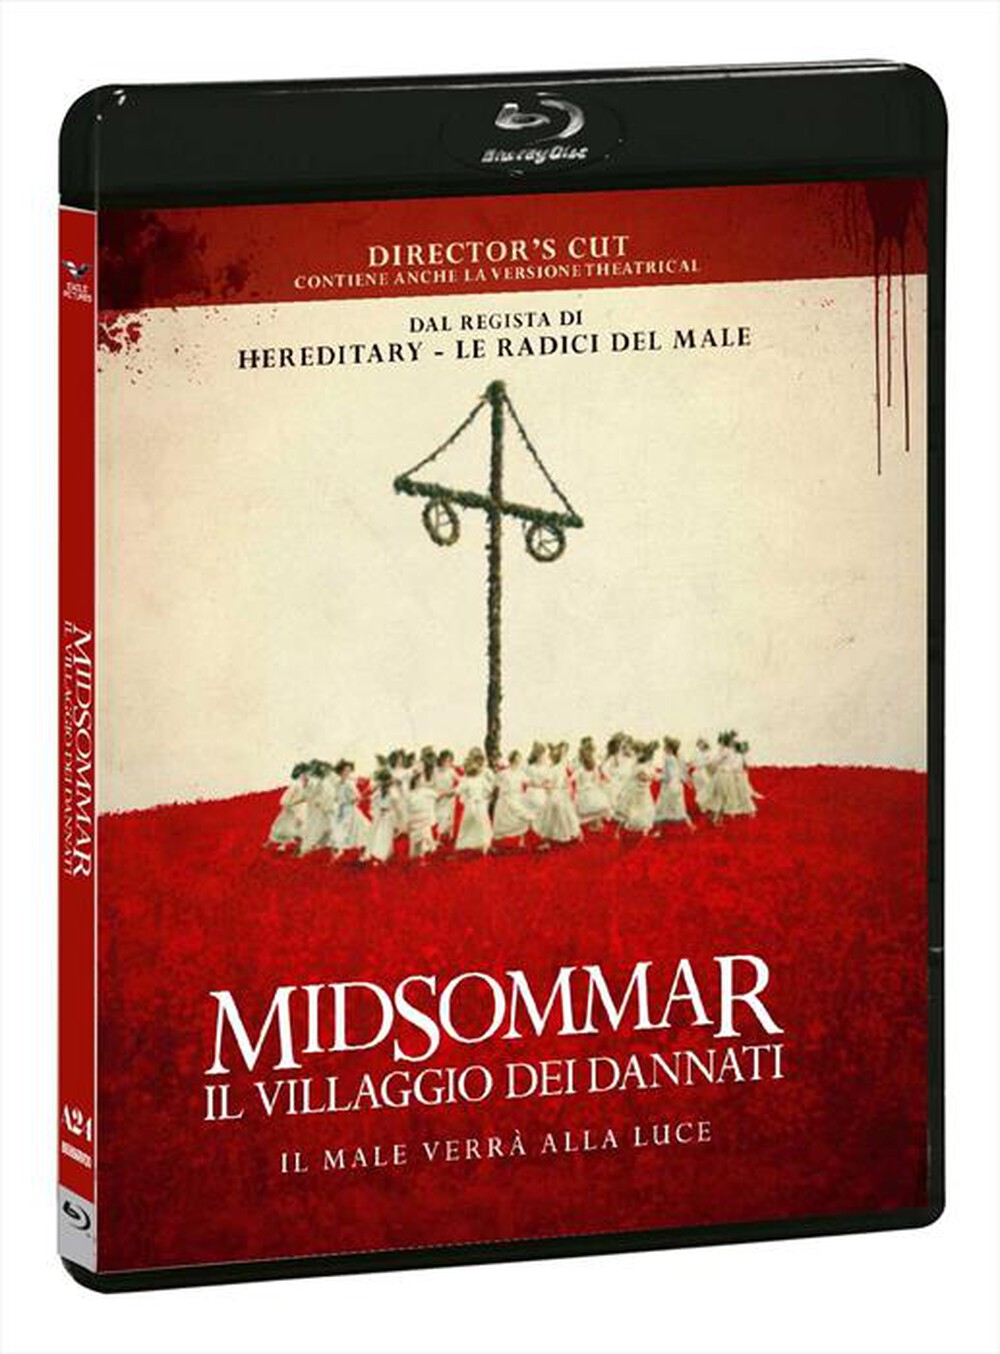 "EAGLE PICTURES - Midsommar: Il Villaggio Dei Dannati (Director's"